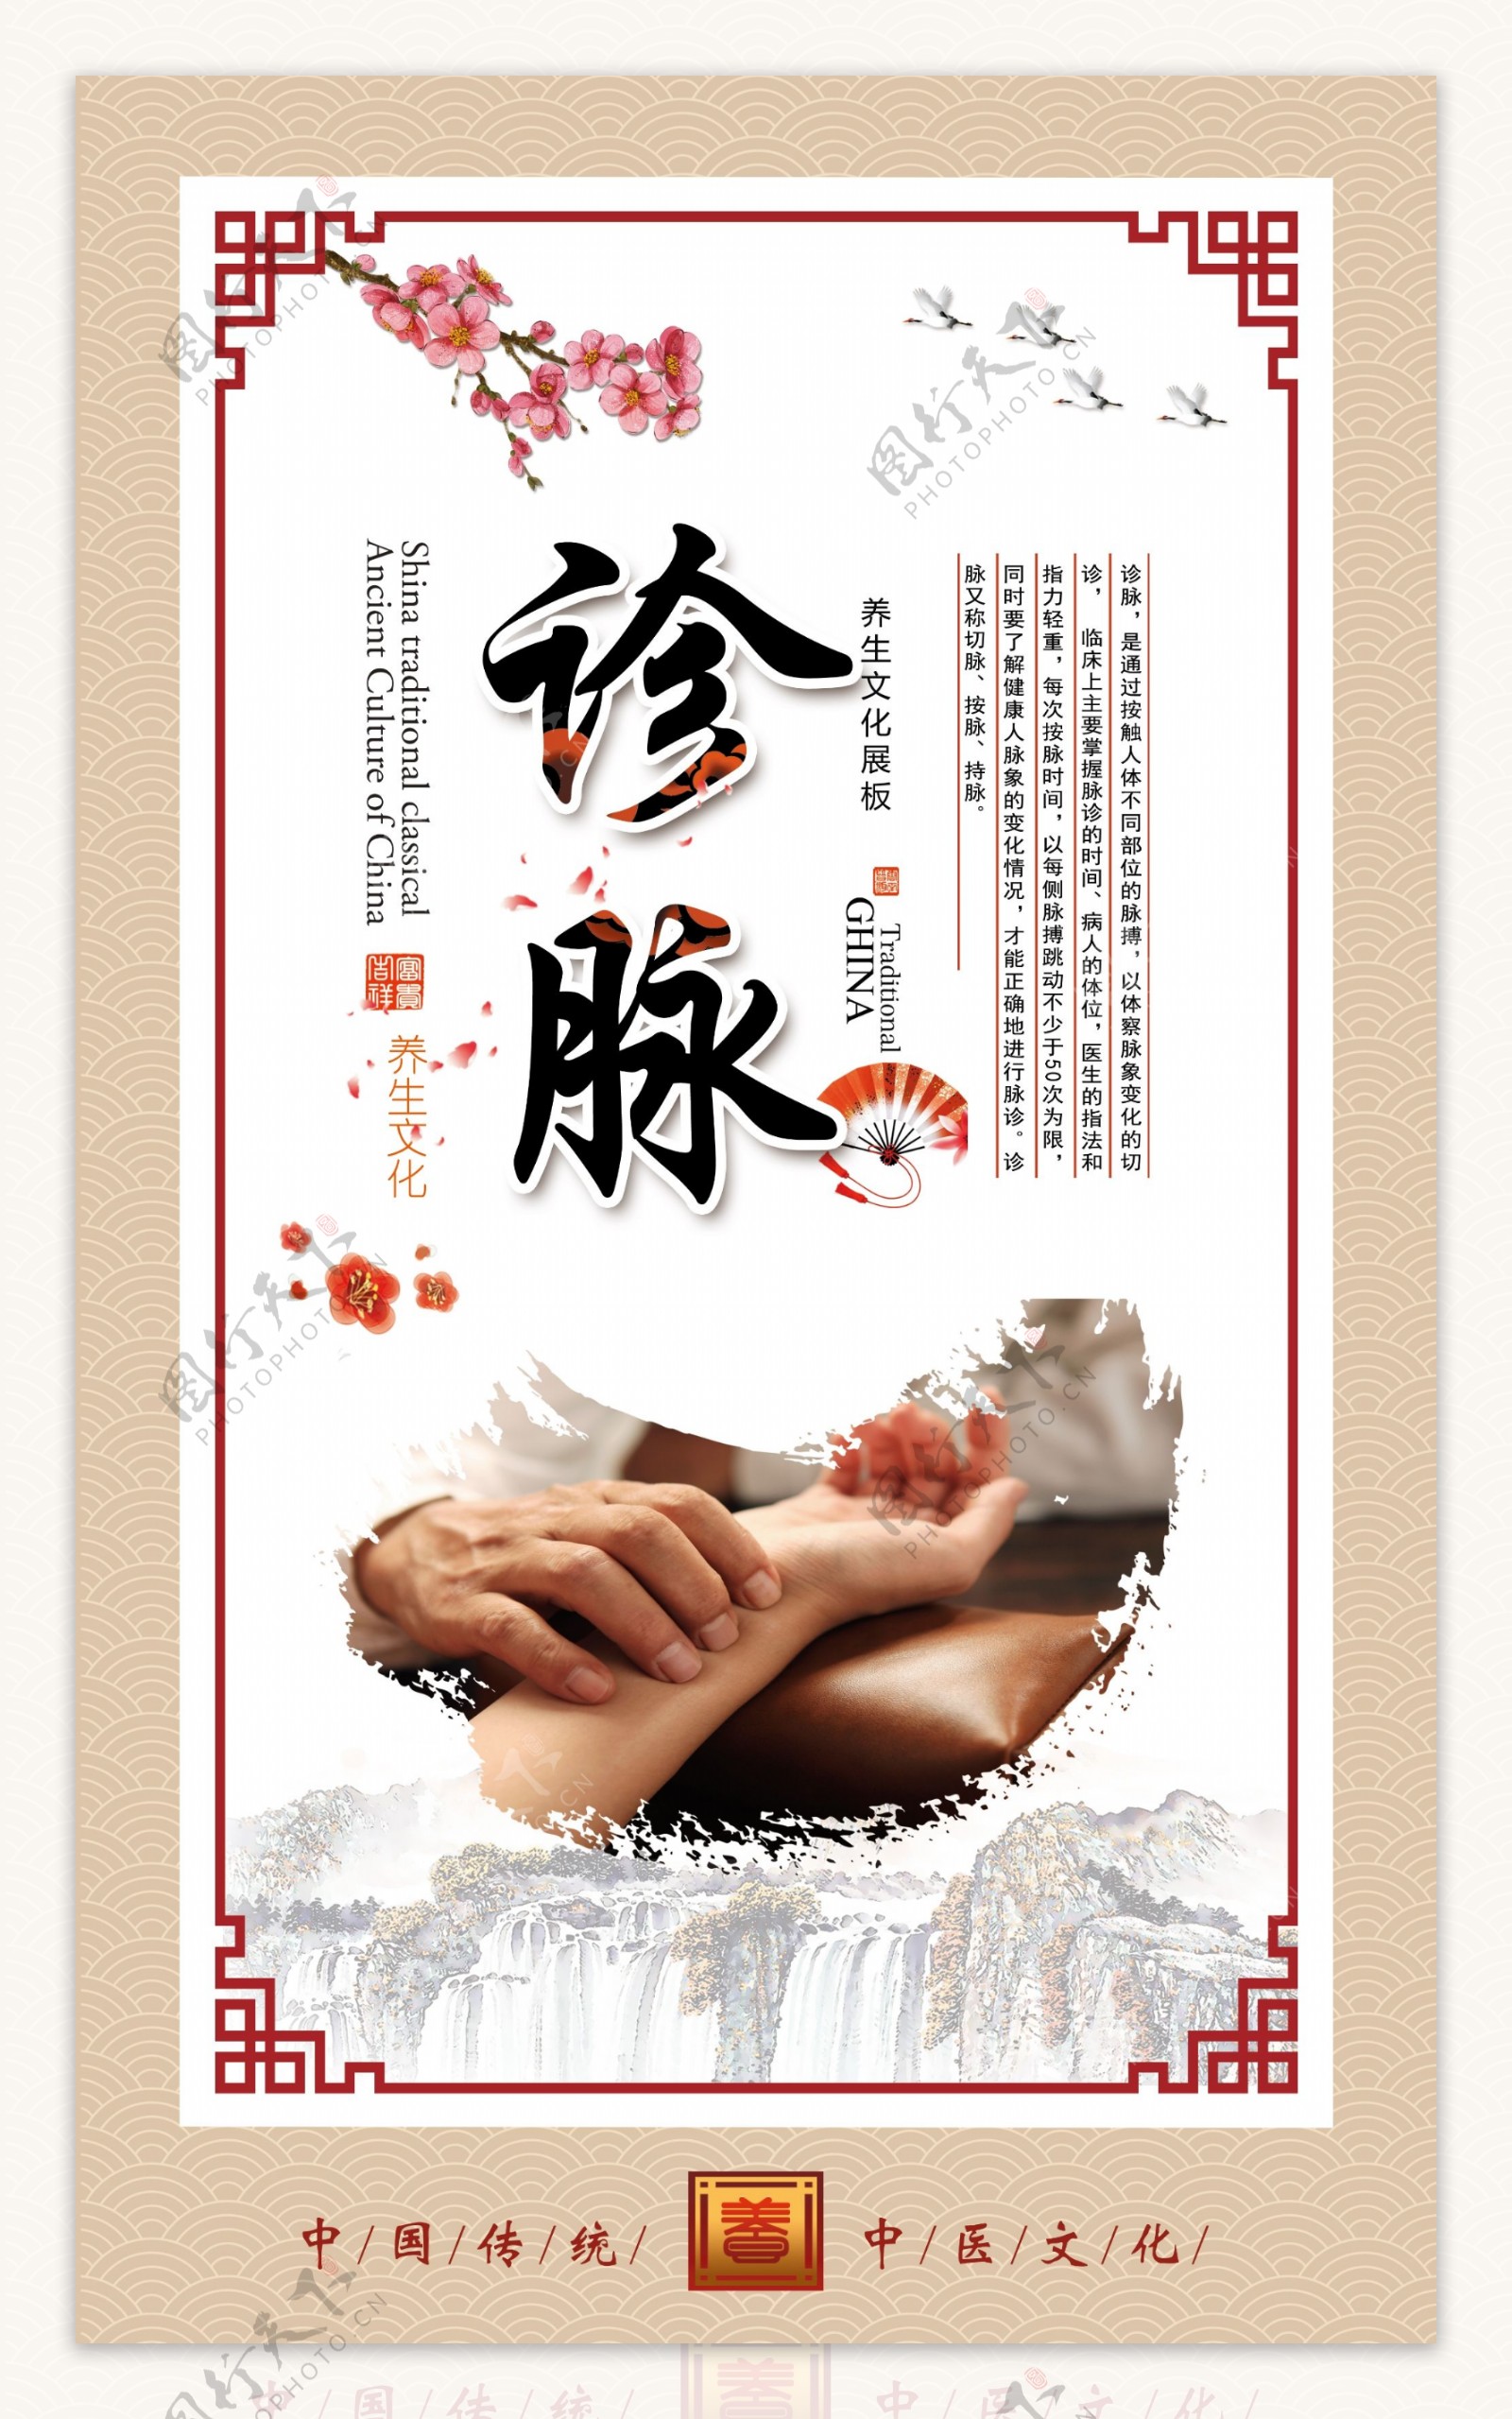 中国风中医文化成套展板设计